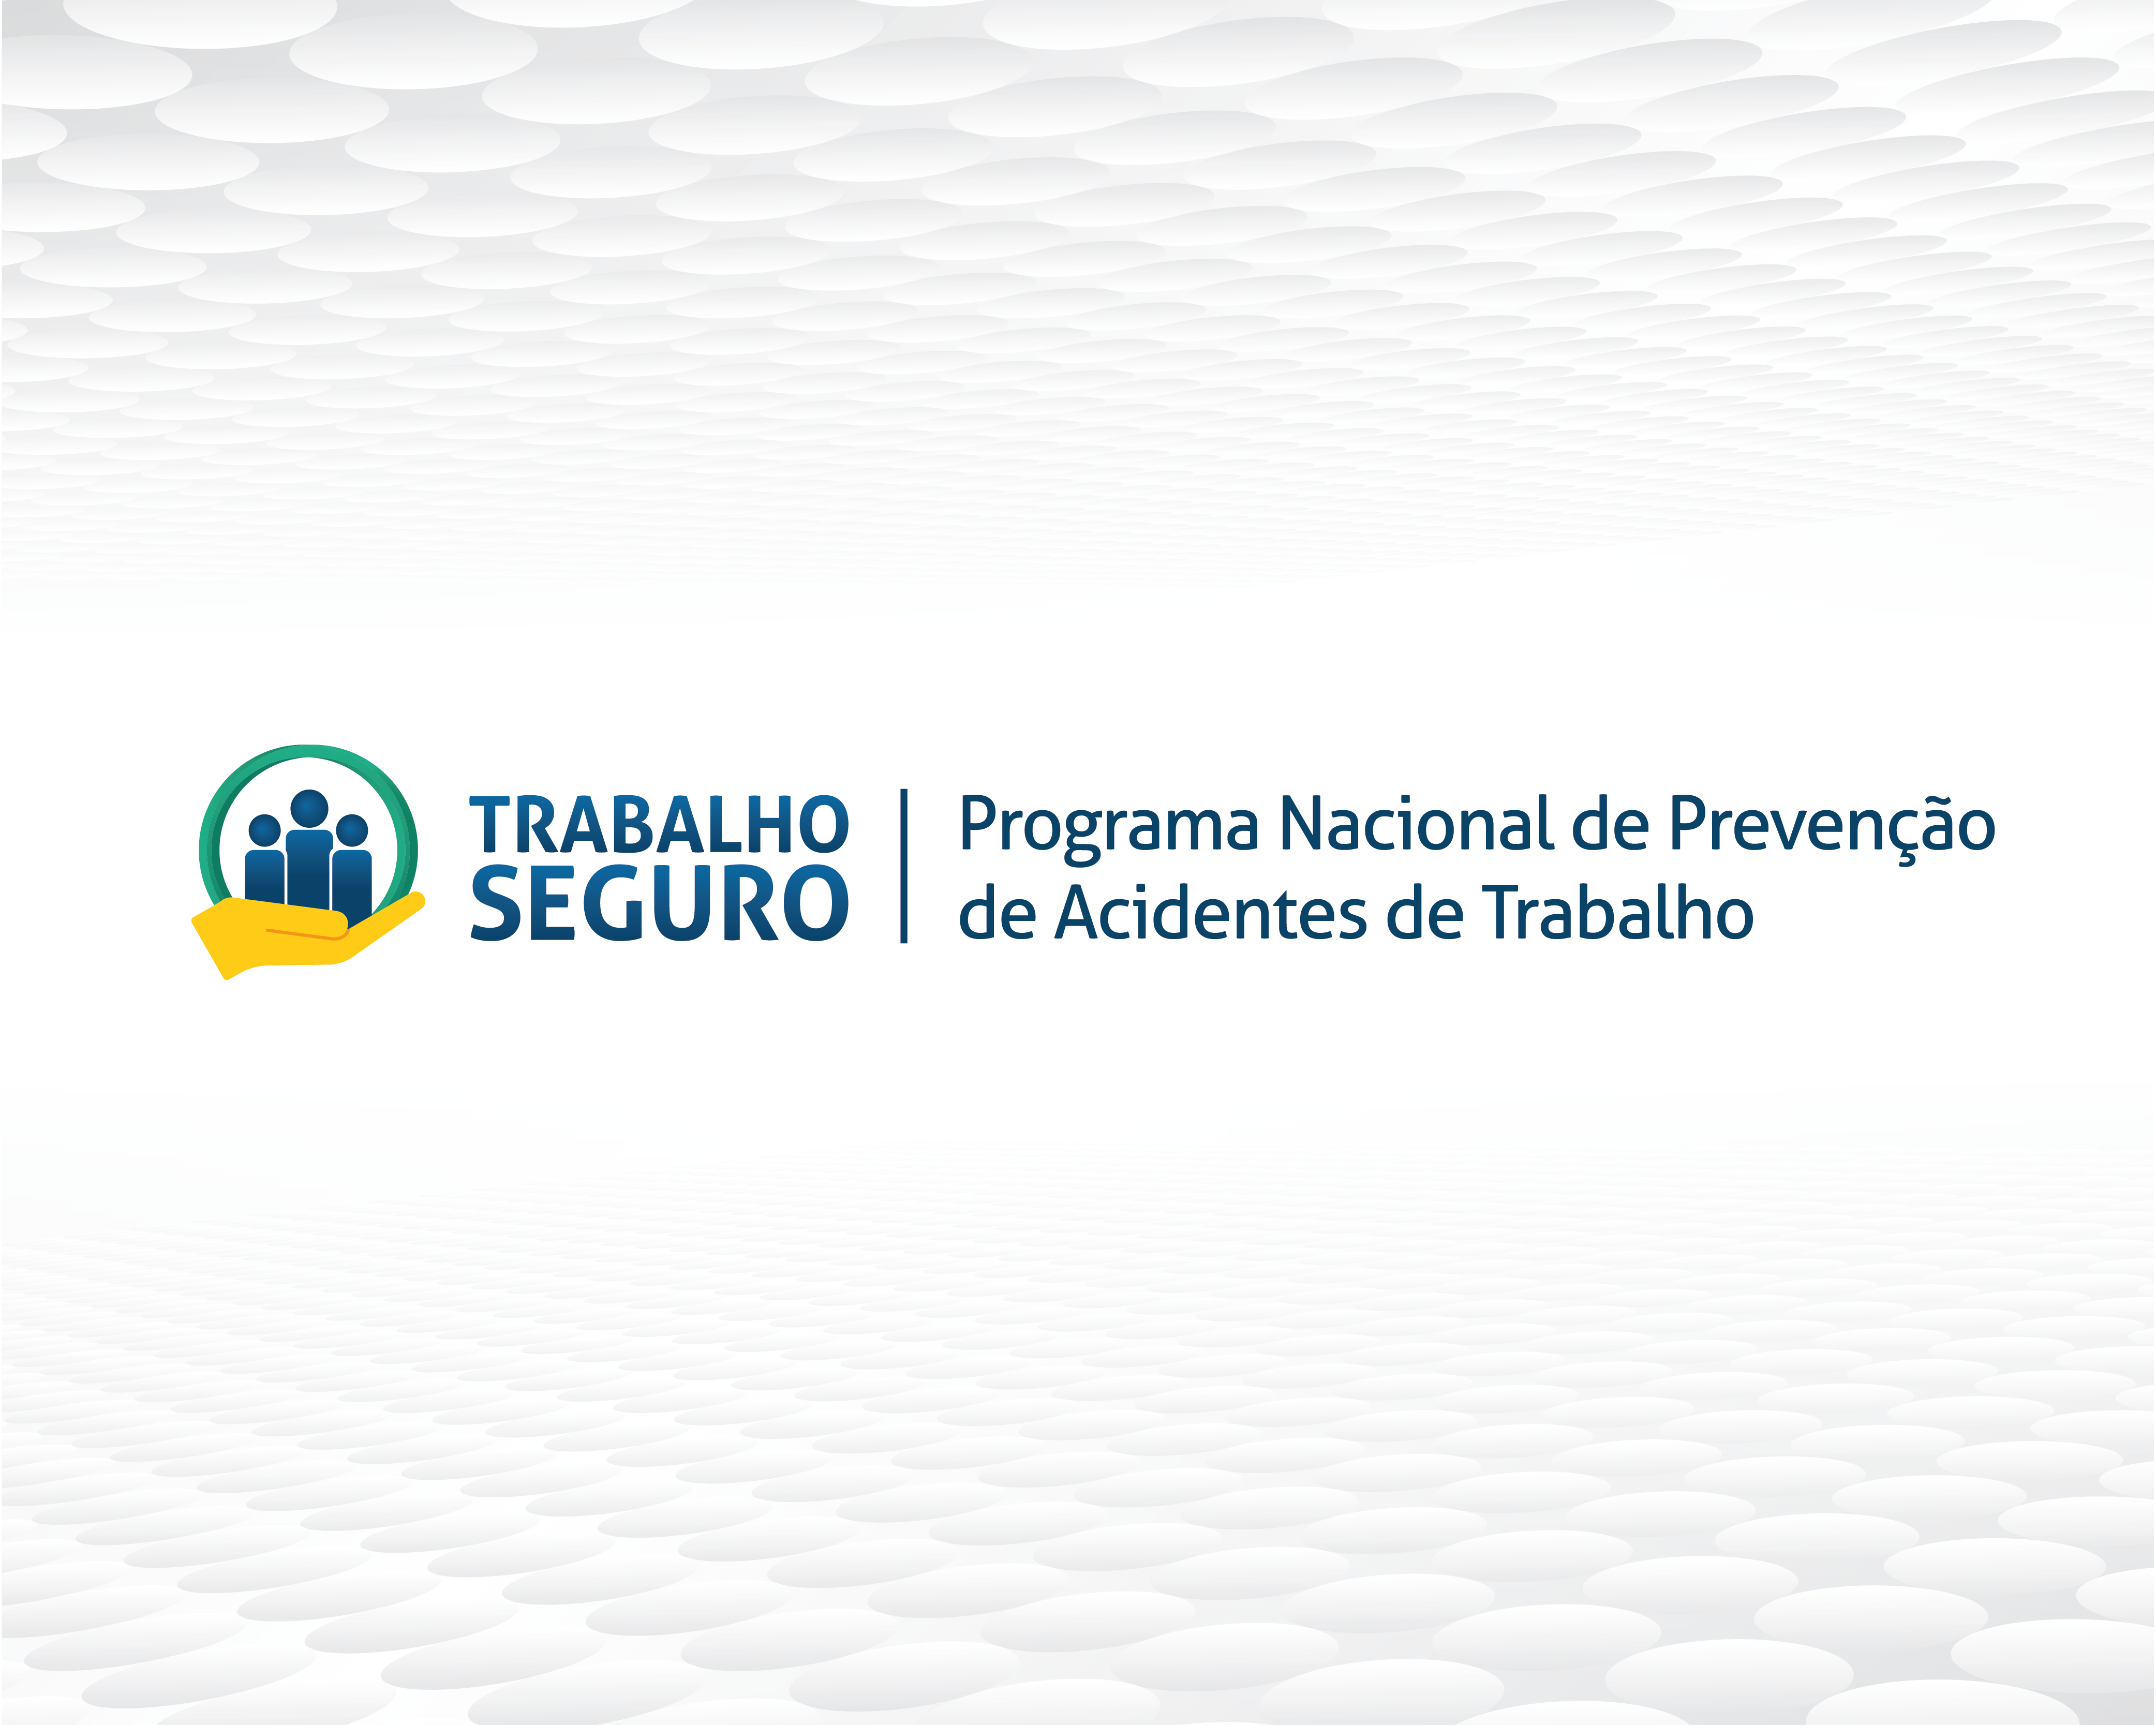 Nova logo do Programa Trabalho Seguro enfatiza proteção de direitos fundamentais